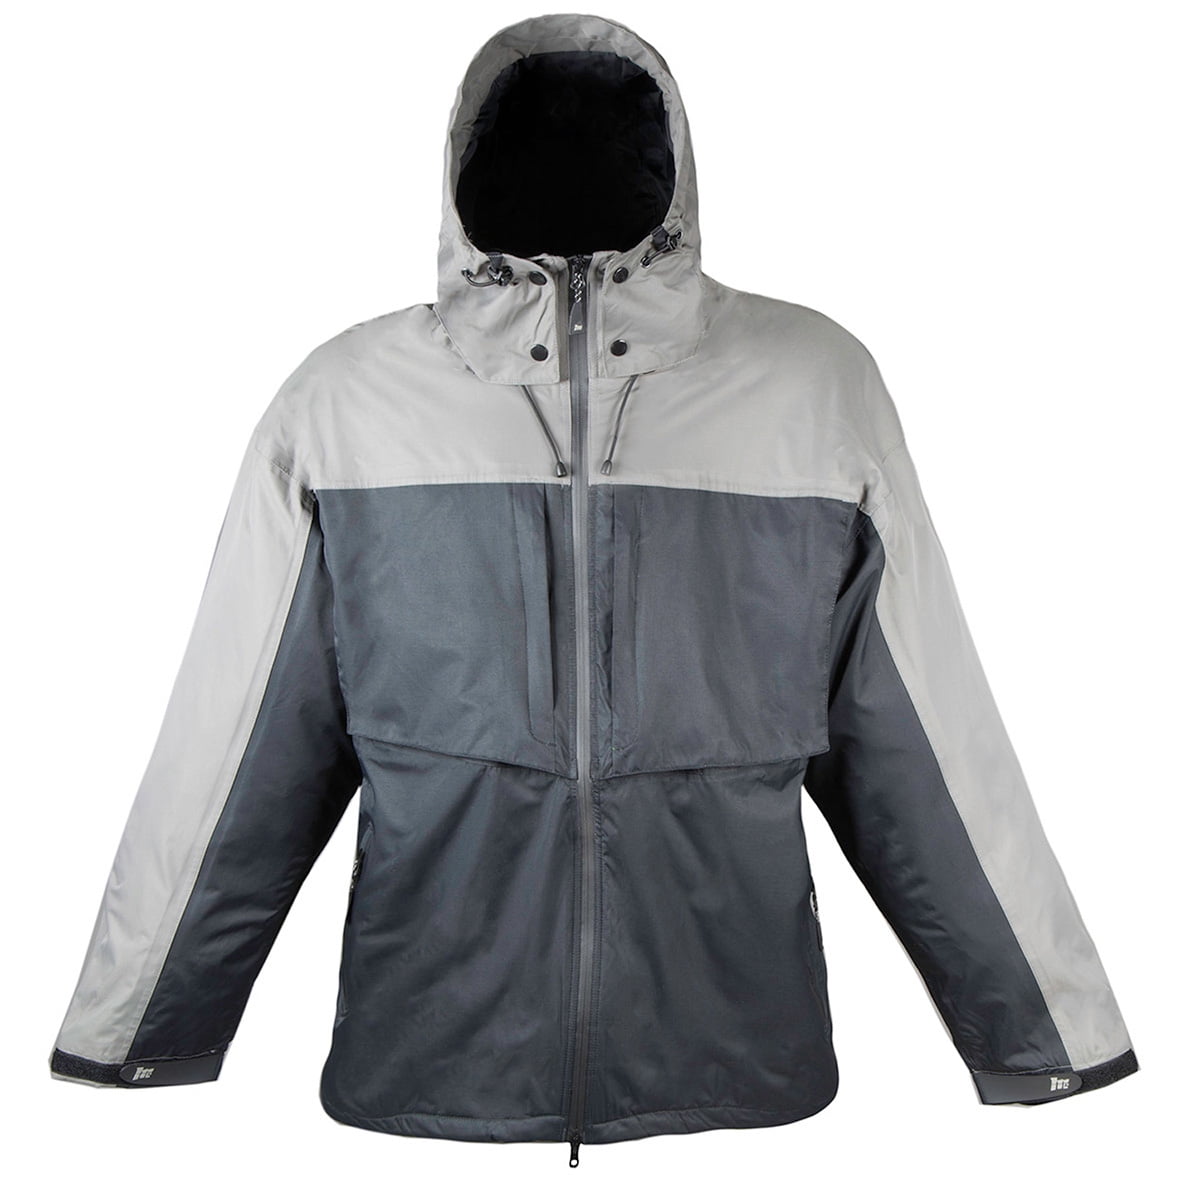 Mossi Men's TPX Premium Jacket - Black/Grey -3XL - Walmart.com